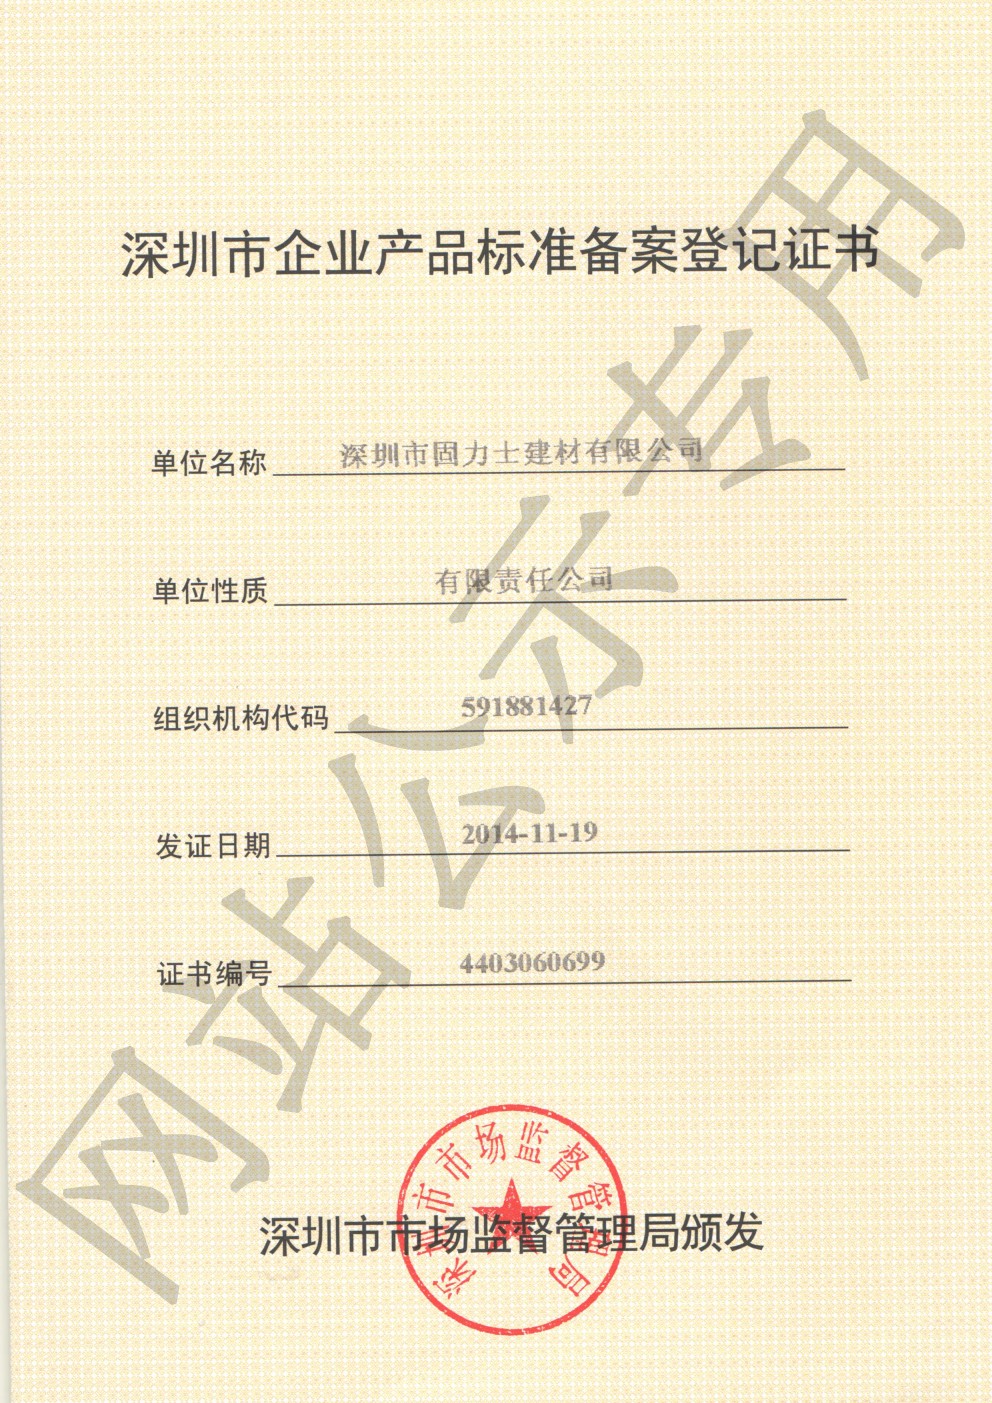 中原镇企业产品标准登记证书